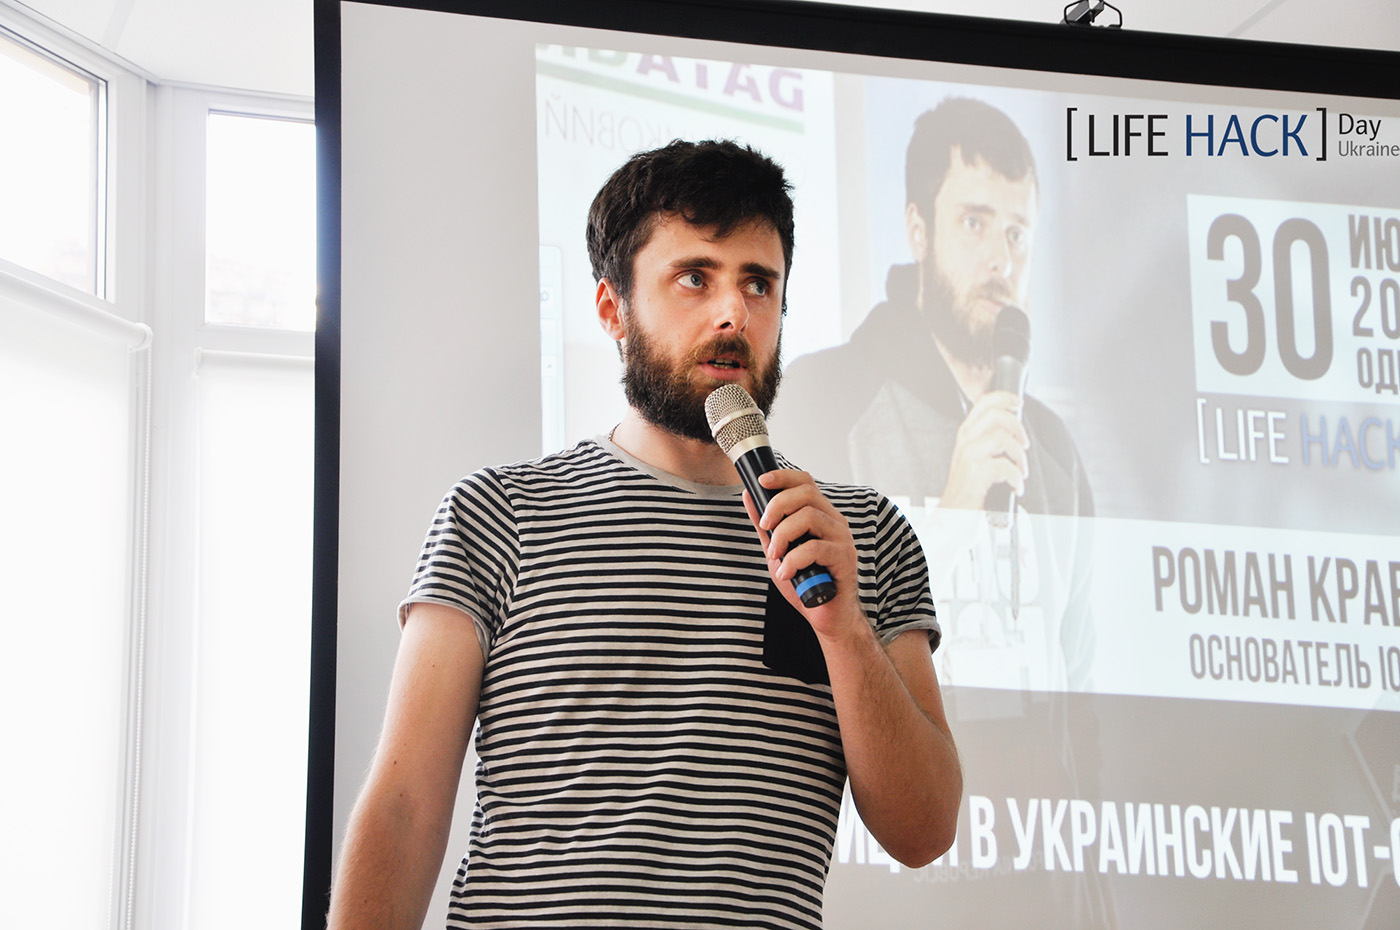 Лайфхаки для бизнеса на LifeHackDay 2016 - Odessa